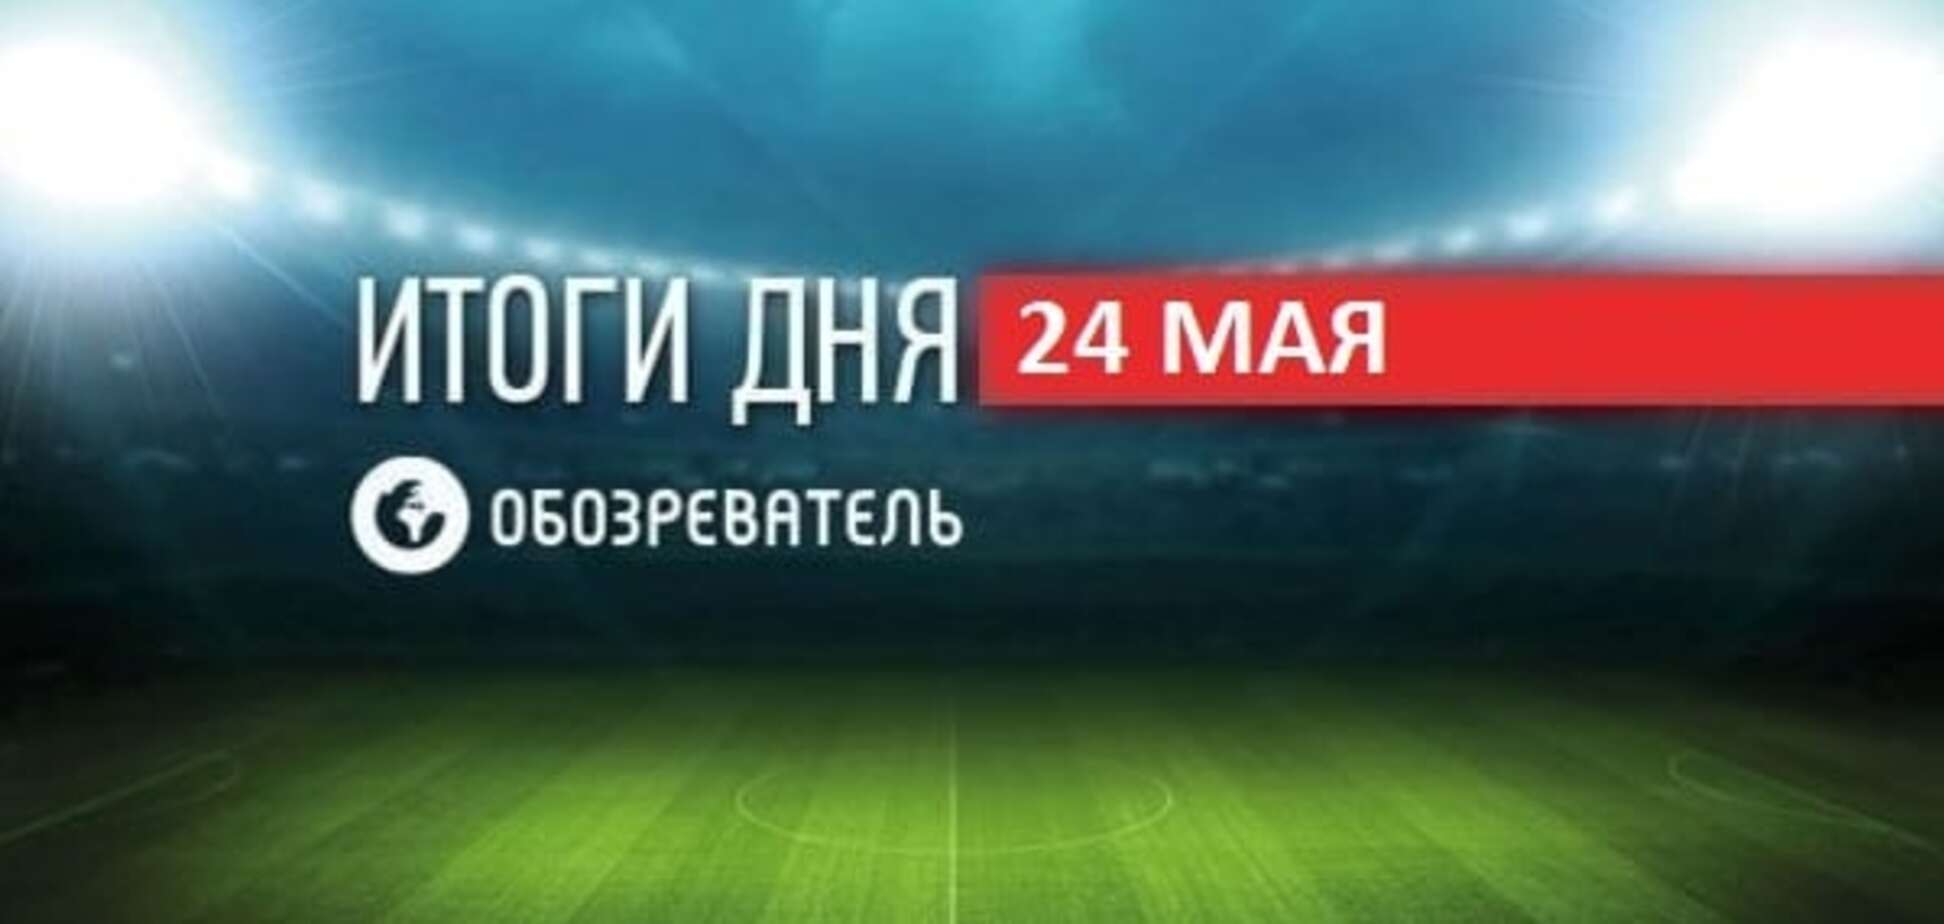 Луческу принял российский клуб. Спортивные итоги 24 мая